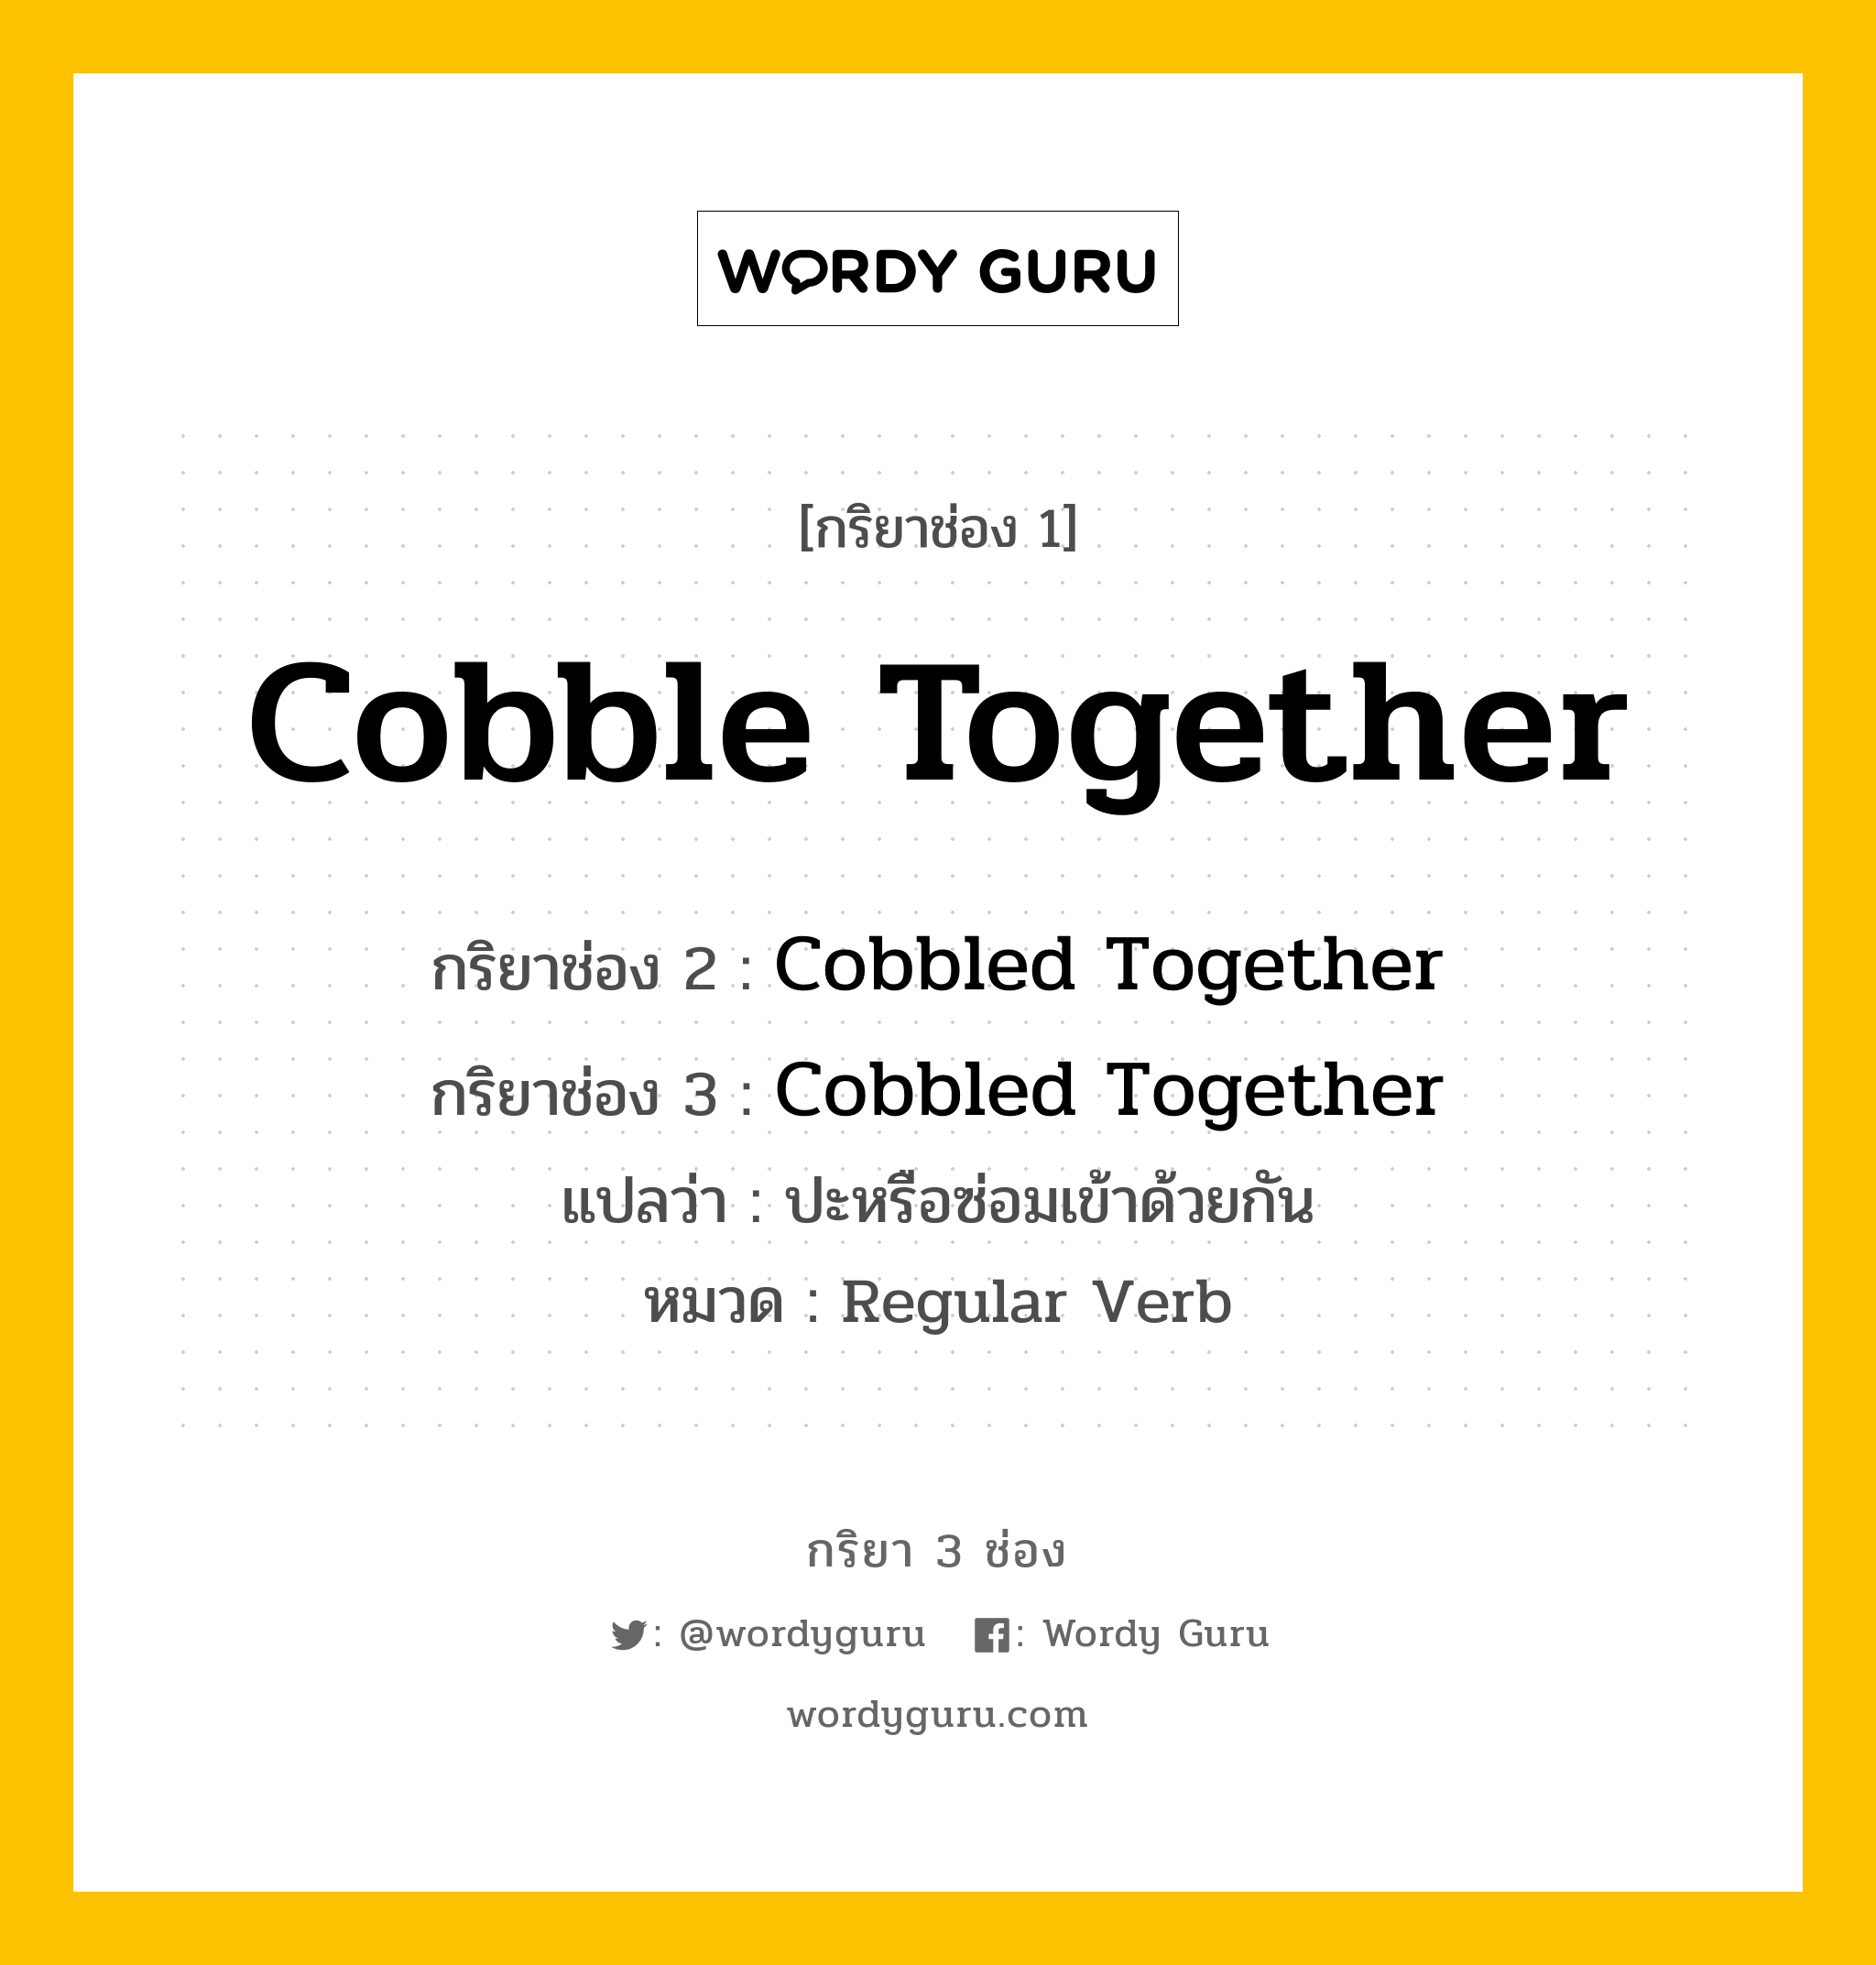 กริยา 3 ช่อง ของ Cobble Together คืออะไร? มาดูคำอ่าน คำแปลกันเลย, กริยาช่อง 1 Cobble Together กริยาช่อง 2 Cobbled Together กริยาช่อง 3 Cobbled Together แปลว่า ปะหรือซ่อมเข้าด้วยกัน หมวด Regular Verb หมวด Regular Verb